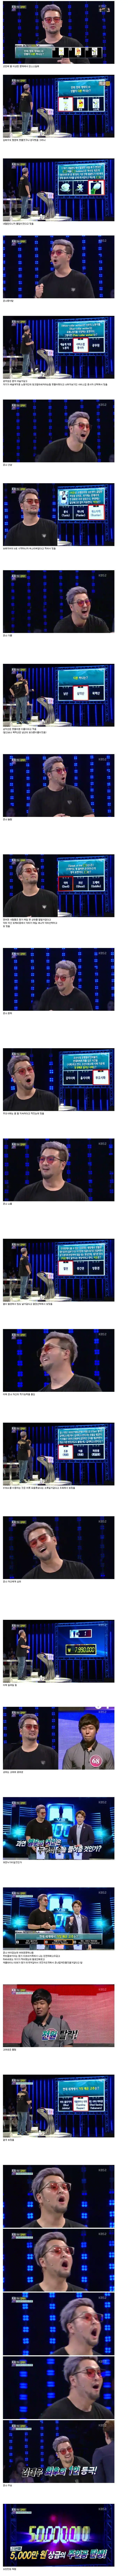 봐도봐도 놀라운 김태우 1대100 우승 과정 ㄷㄷ...jpg | mbong.kr 엠봉